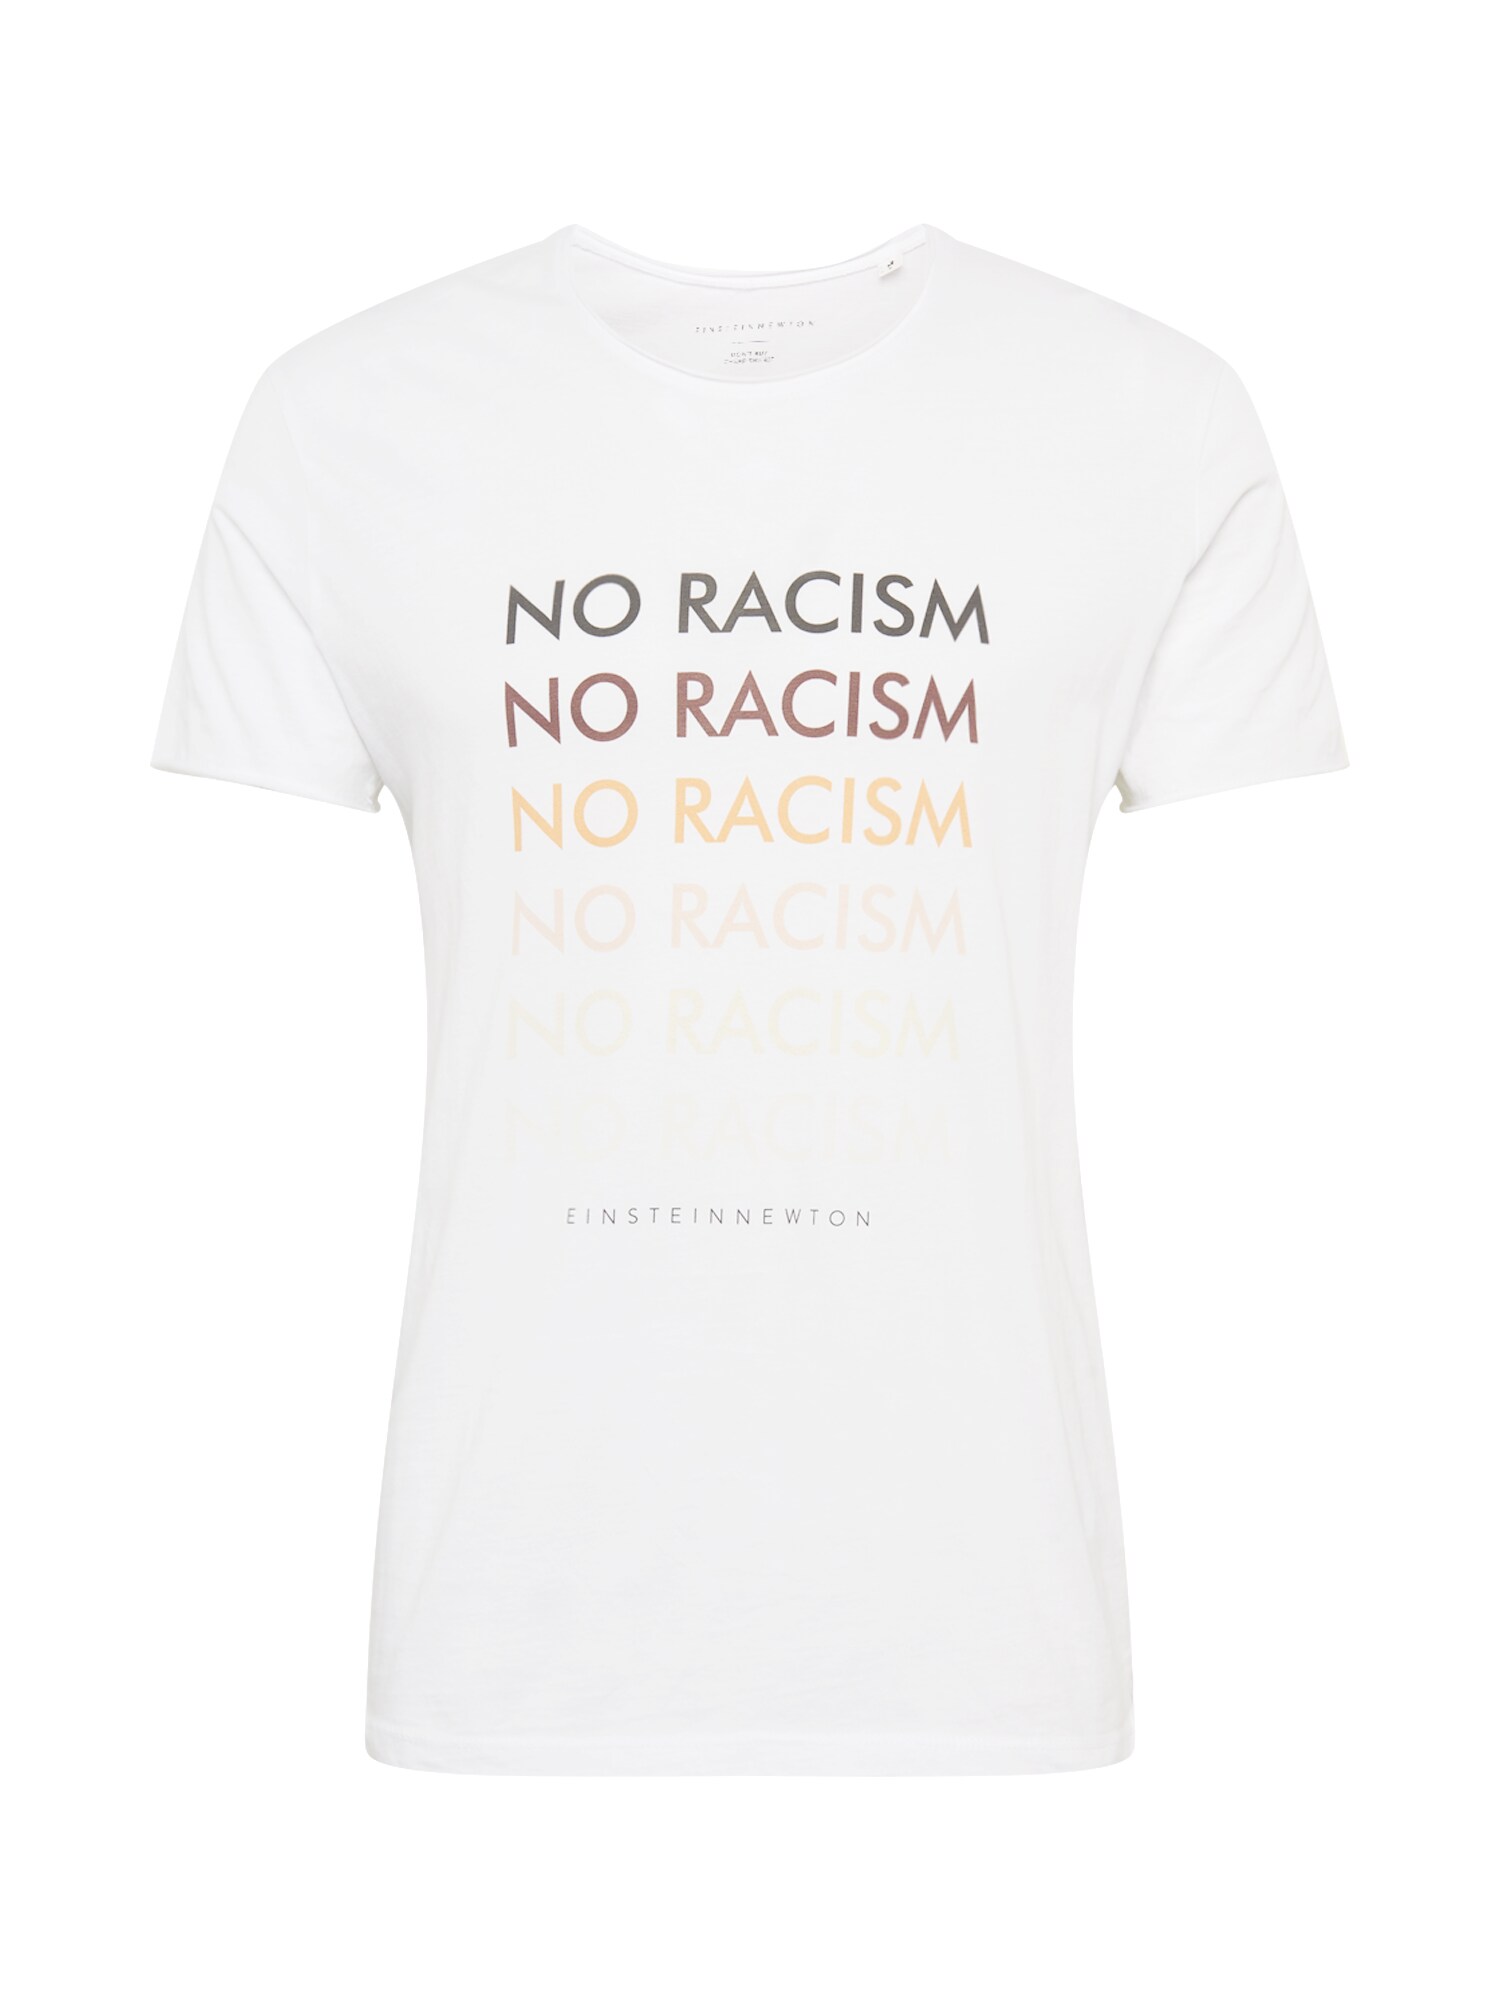 EINSTEIN & NEWTON Marškinėliai 'No Racism'  mišrios spalvos / balta